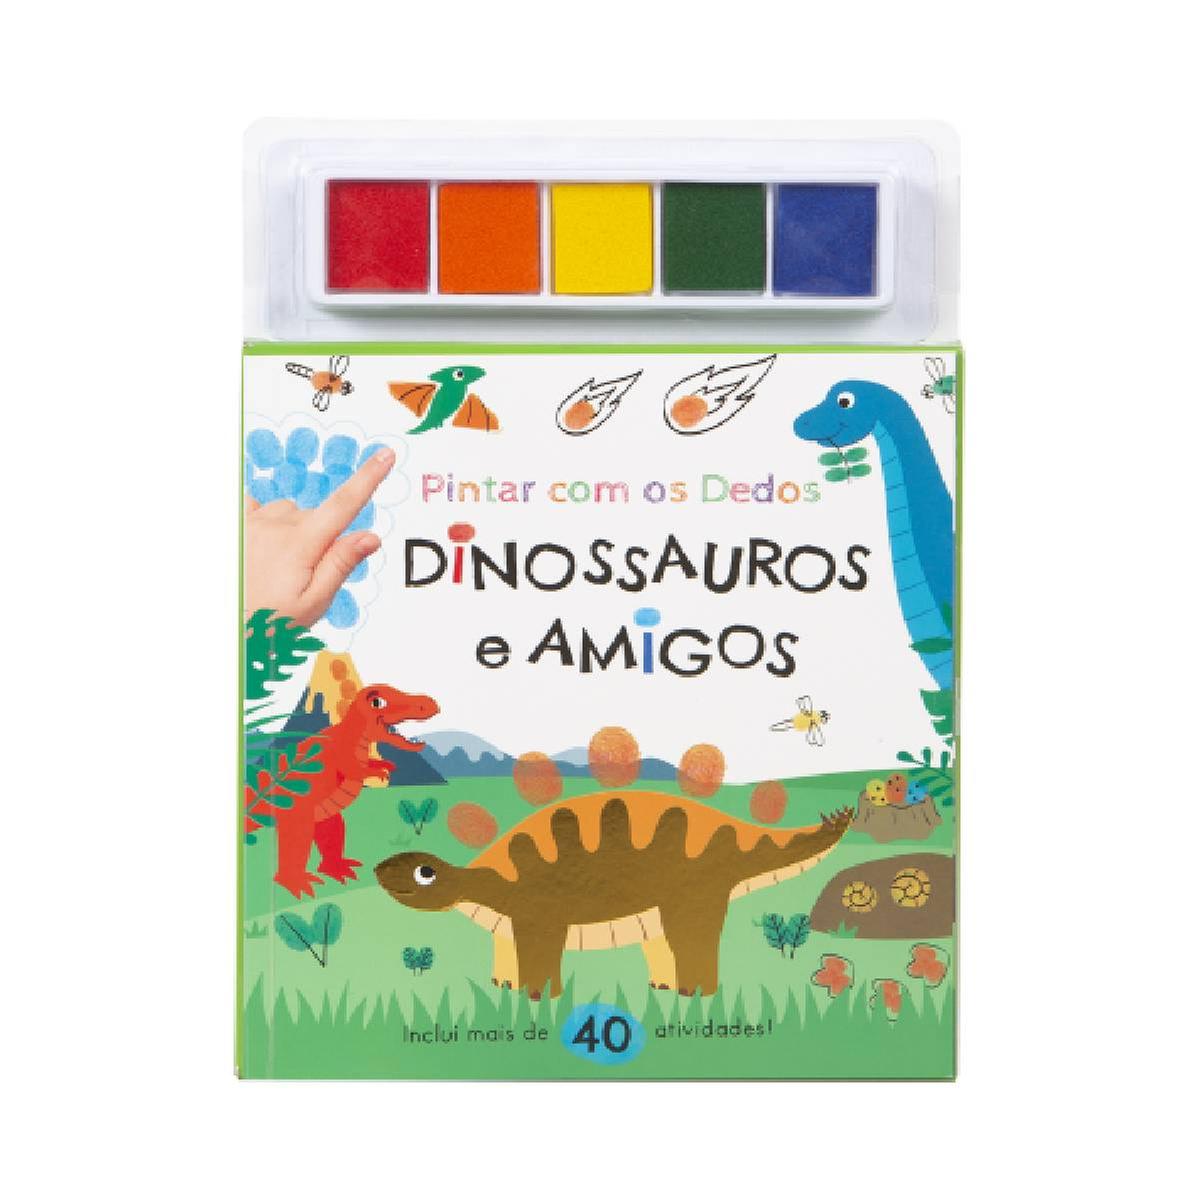 Página De Colorir Dinossauros Para Crianças Pré-escolares. Números